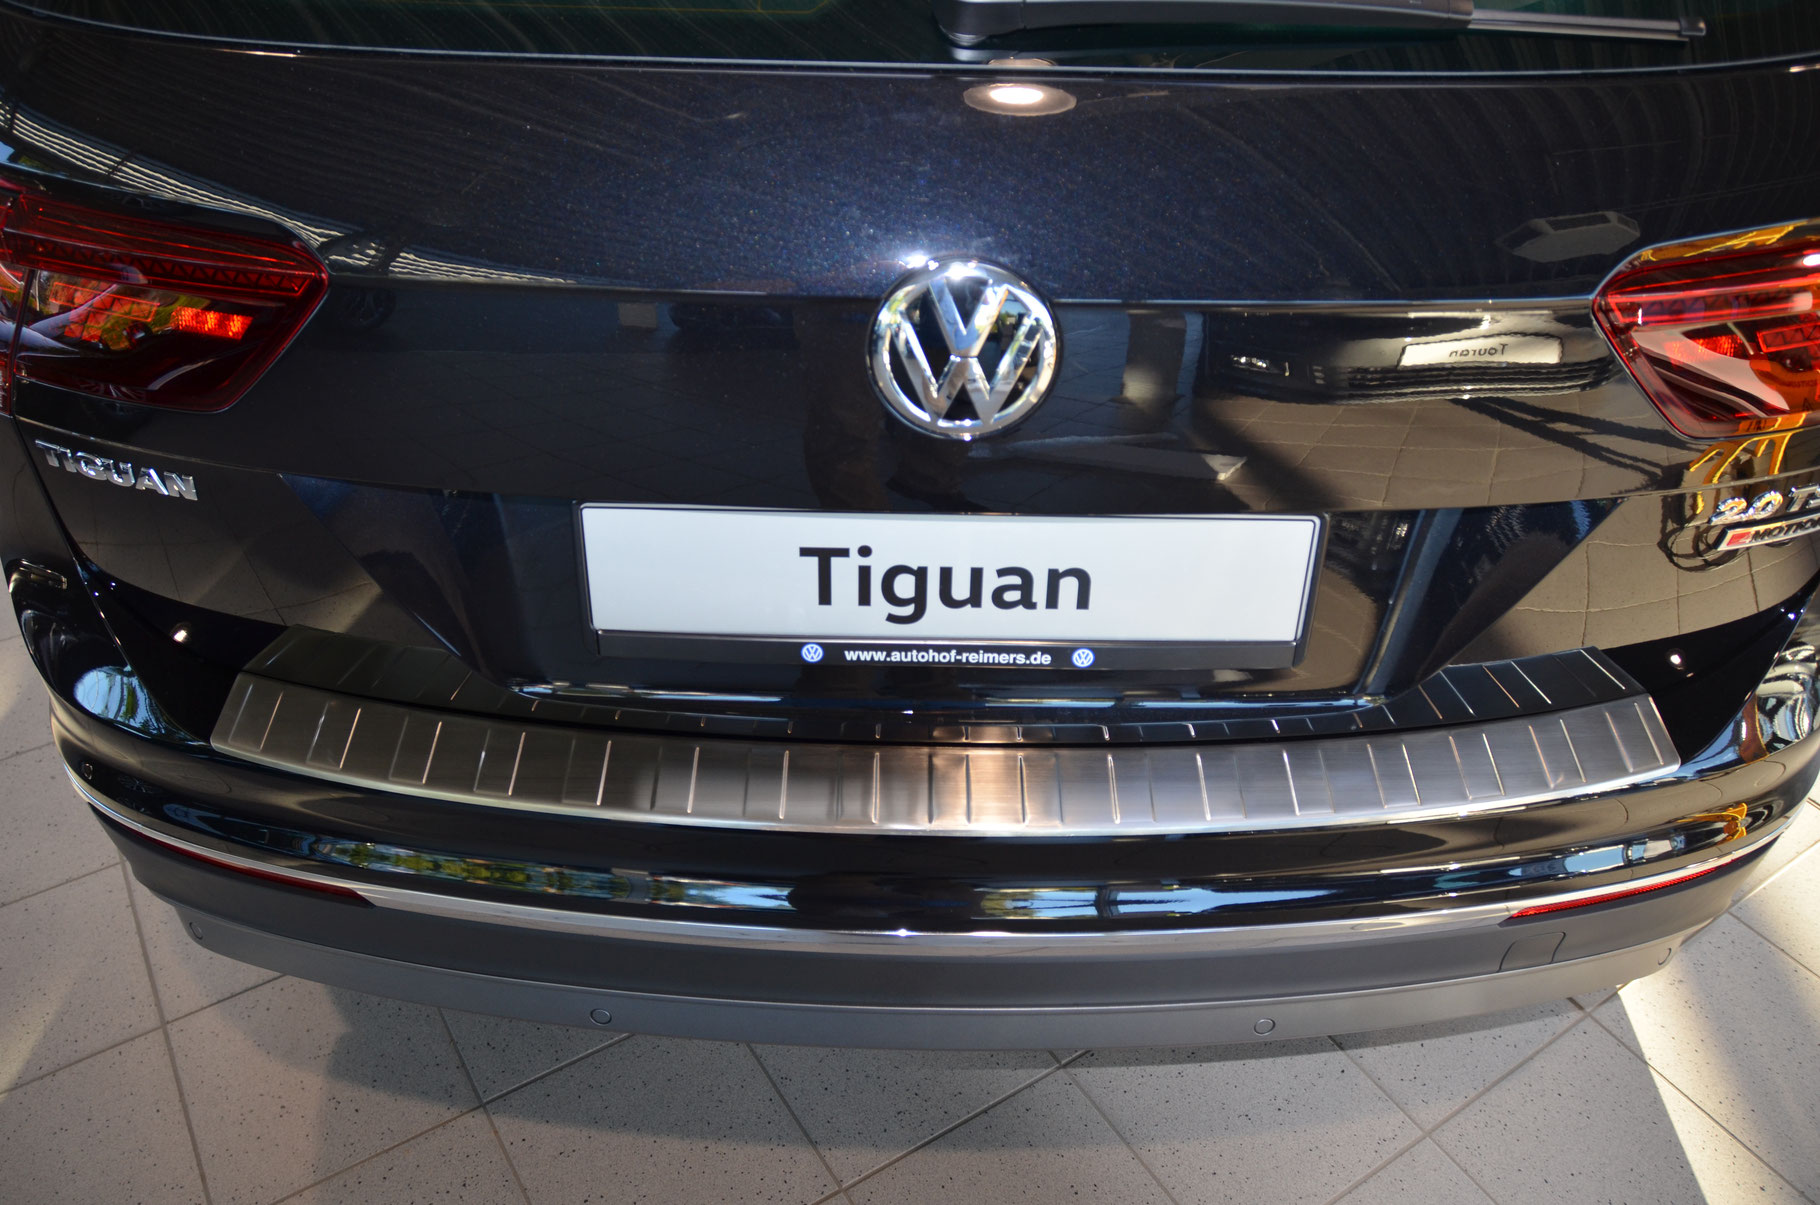 Ladekantenschutz für VW TIGUAN - Schutz für die Ladekante Ihres Fahrzeuges